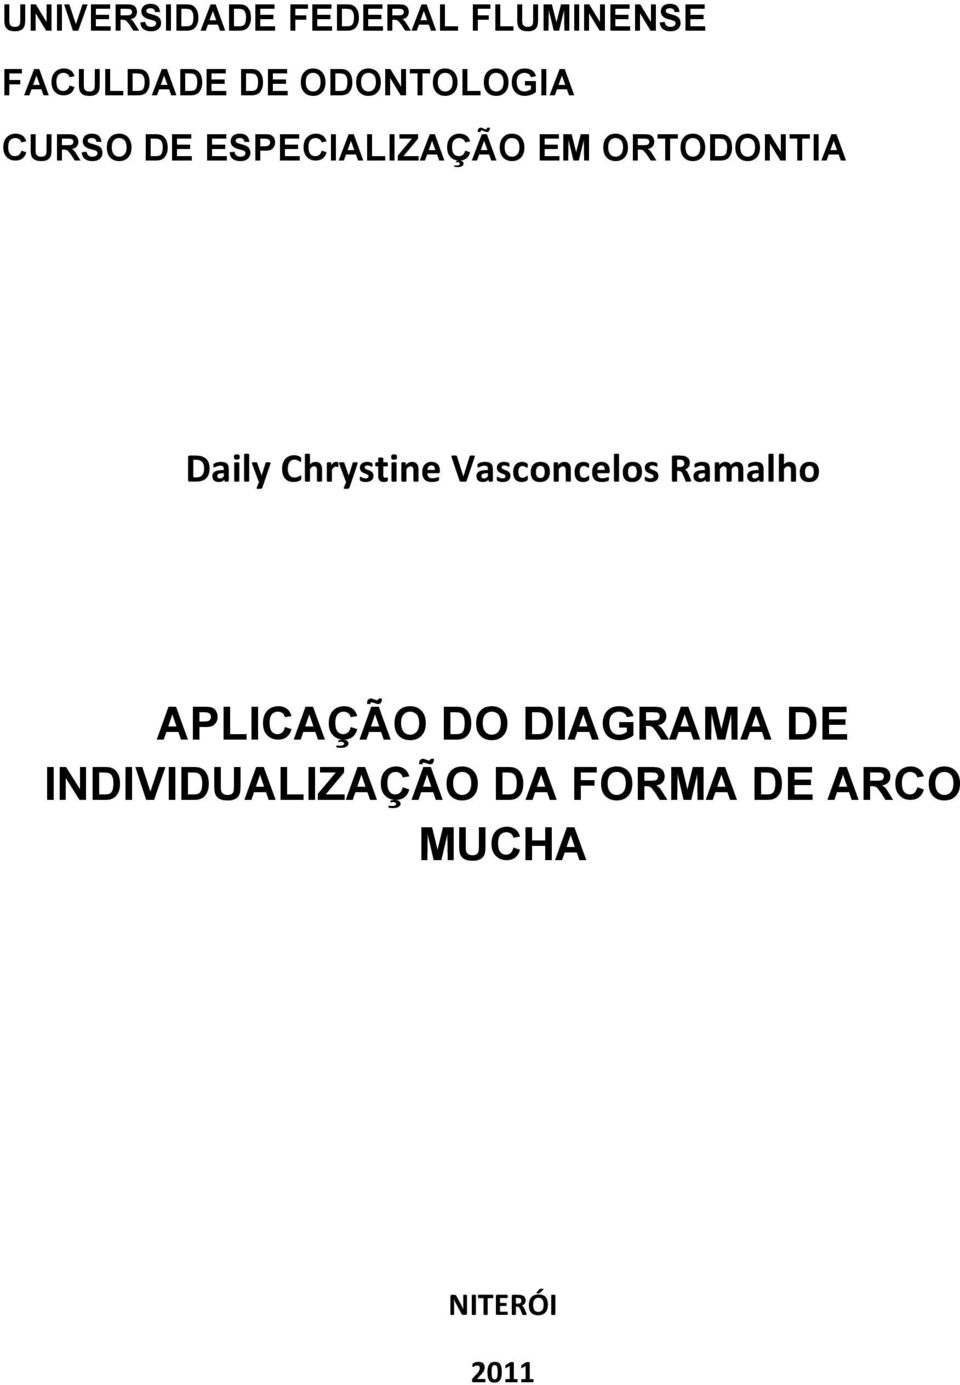 Daily Chrystine Vasconcelos Ramalho APLICAÇÃO DO